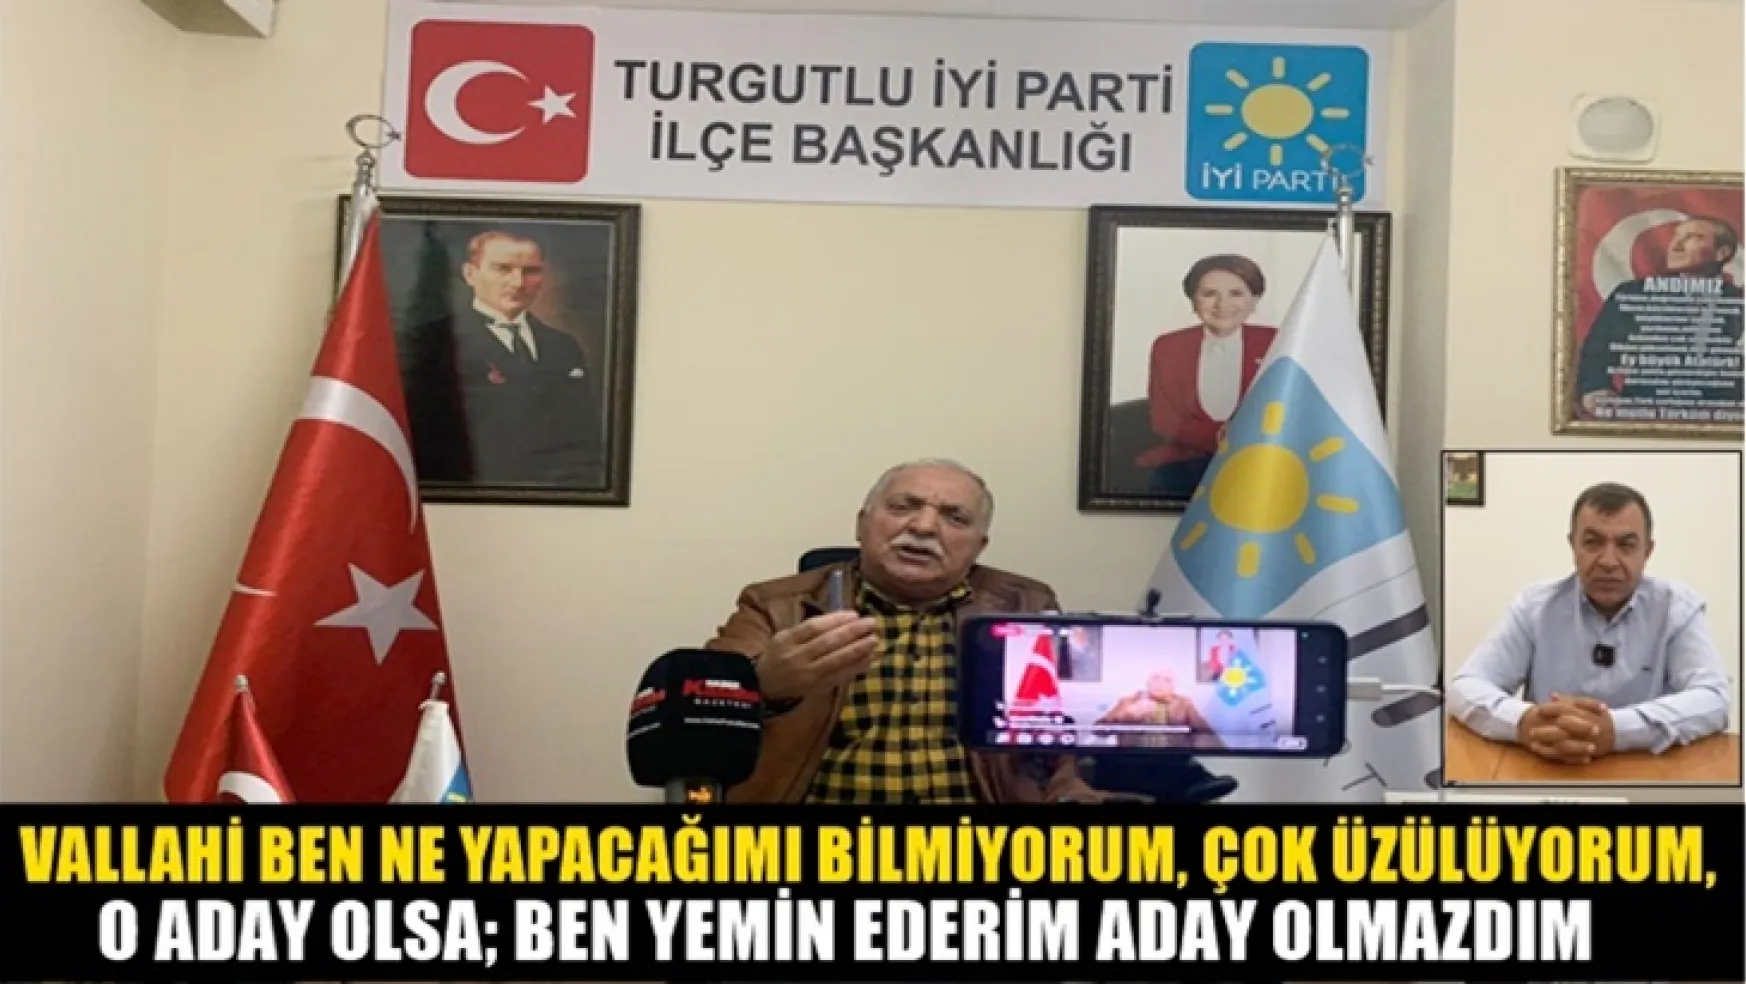 İYİ Parti Belediye Başkan Adayı Ahmet Orhan, Yeniden Refah Partisi Belediye Başkan Adayı Mustafa Serhat Orhan'a sitem etti